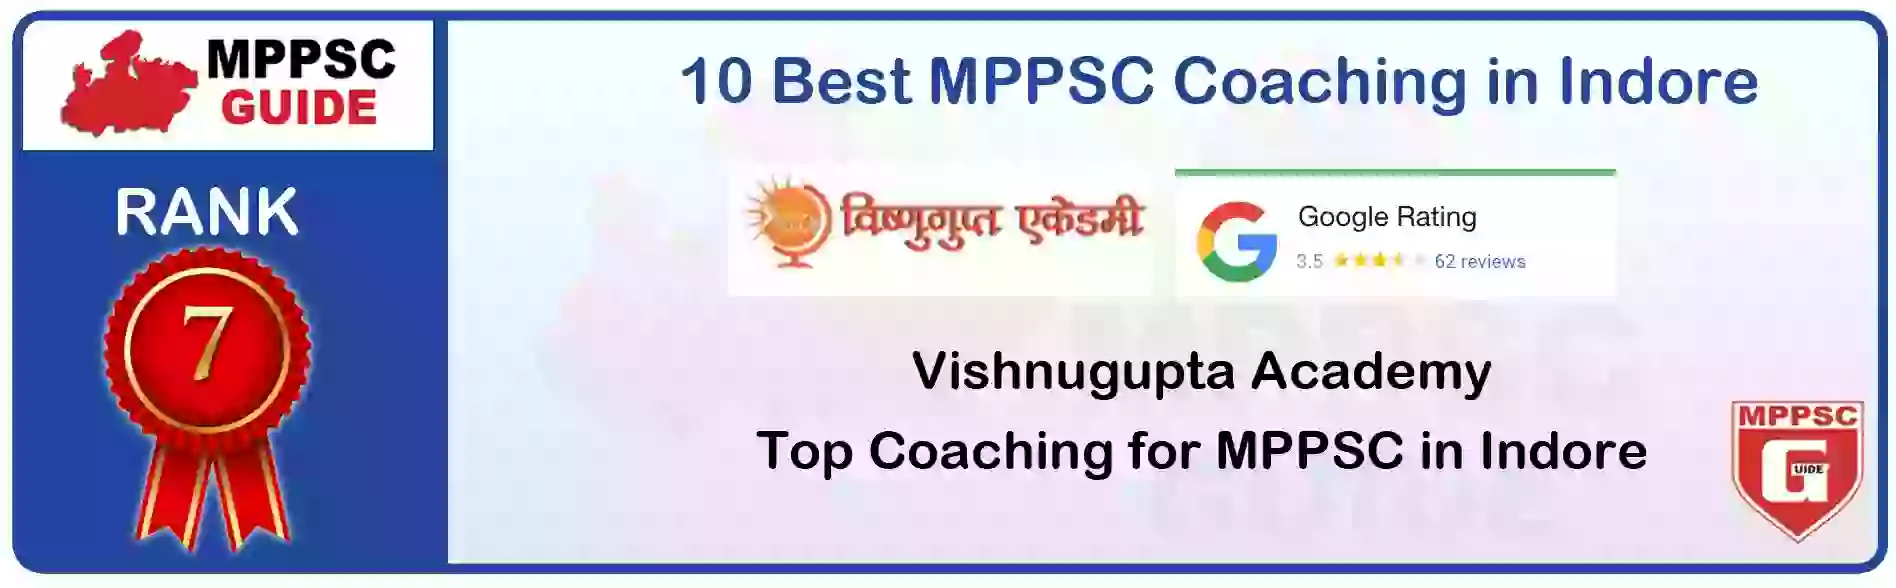 MPPSC Coaching in Shivpuri, MPPSC Coaching Institute In Shivpuri, Best MPPSC Coaching in Shivpuri, Top 10 MPPSC Coaching In Shivpuri, best mppsc coaching institute in shivpuri, MPPSC Coaching Classes In Shivpuri, MPPSC Online Coaching In Shivpuri, mppsc coaching in Shivpuri bhanwarkua